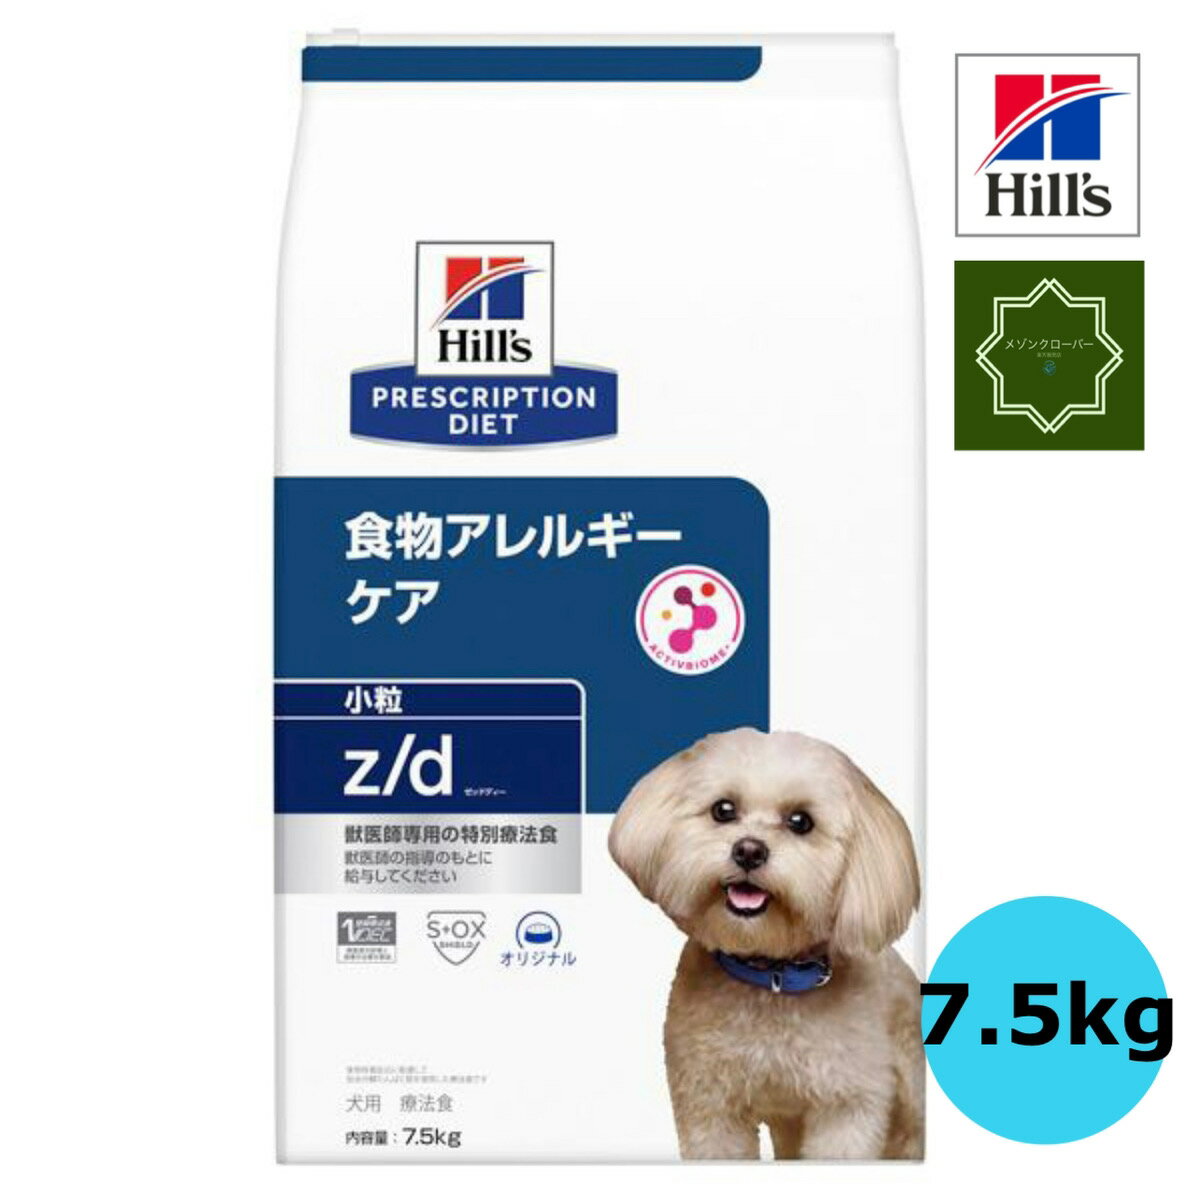 犬用 z/d 小粒 7.5kg ドッグフード ペットフード 犬 イヌ アレルギー 特別療養食 Hills ヒルズ 【送料無料】